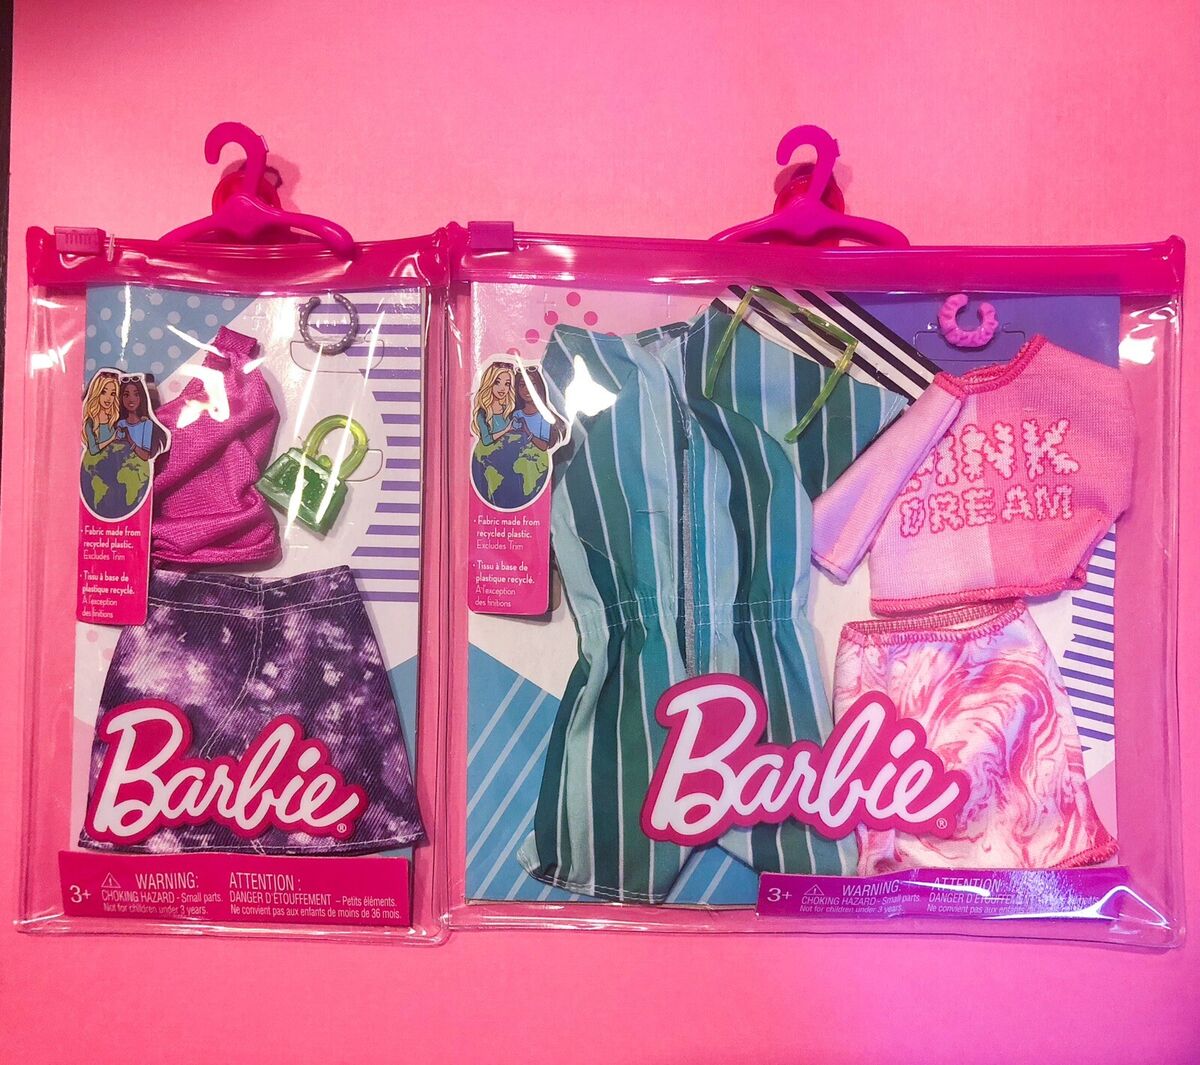 Hilse Arrangement Fritagelse Barbie Fashion Packs New Spring 2023 Sample LOT OF 2 | eBay